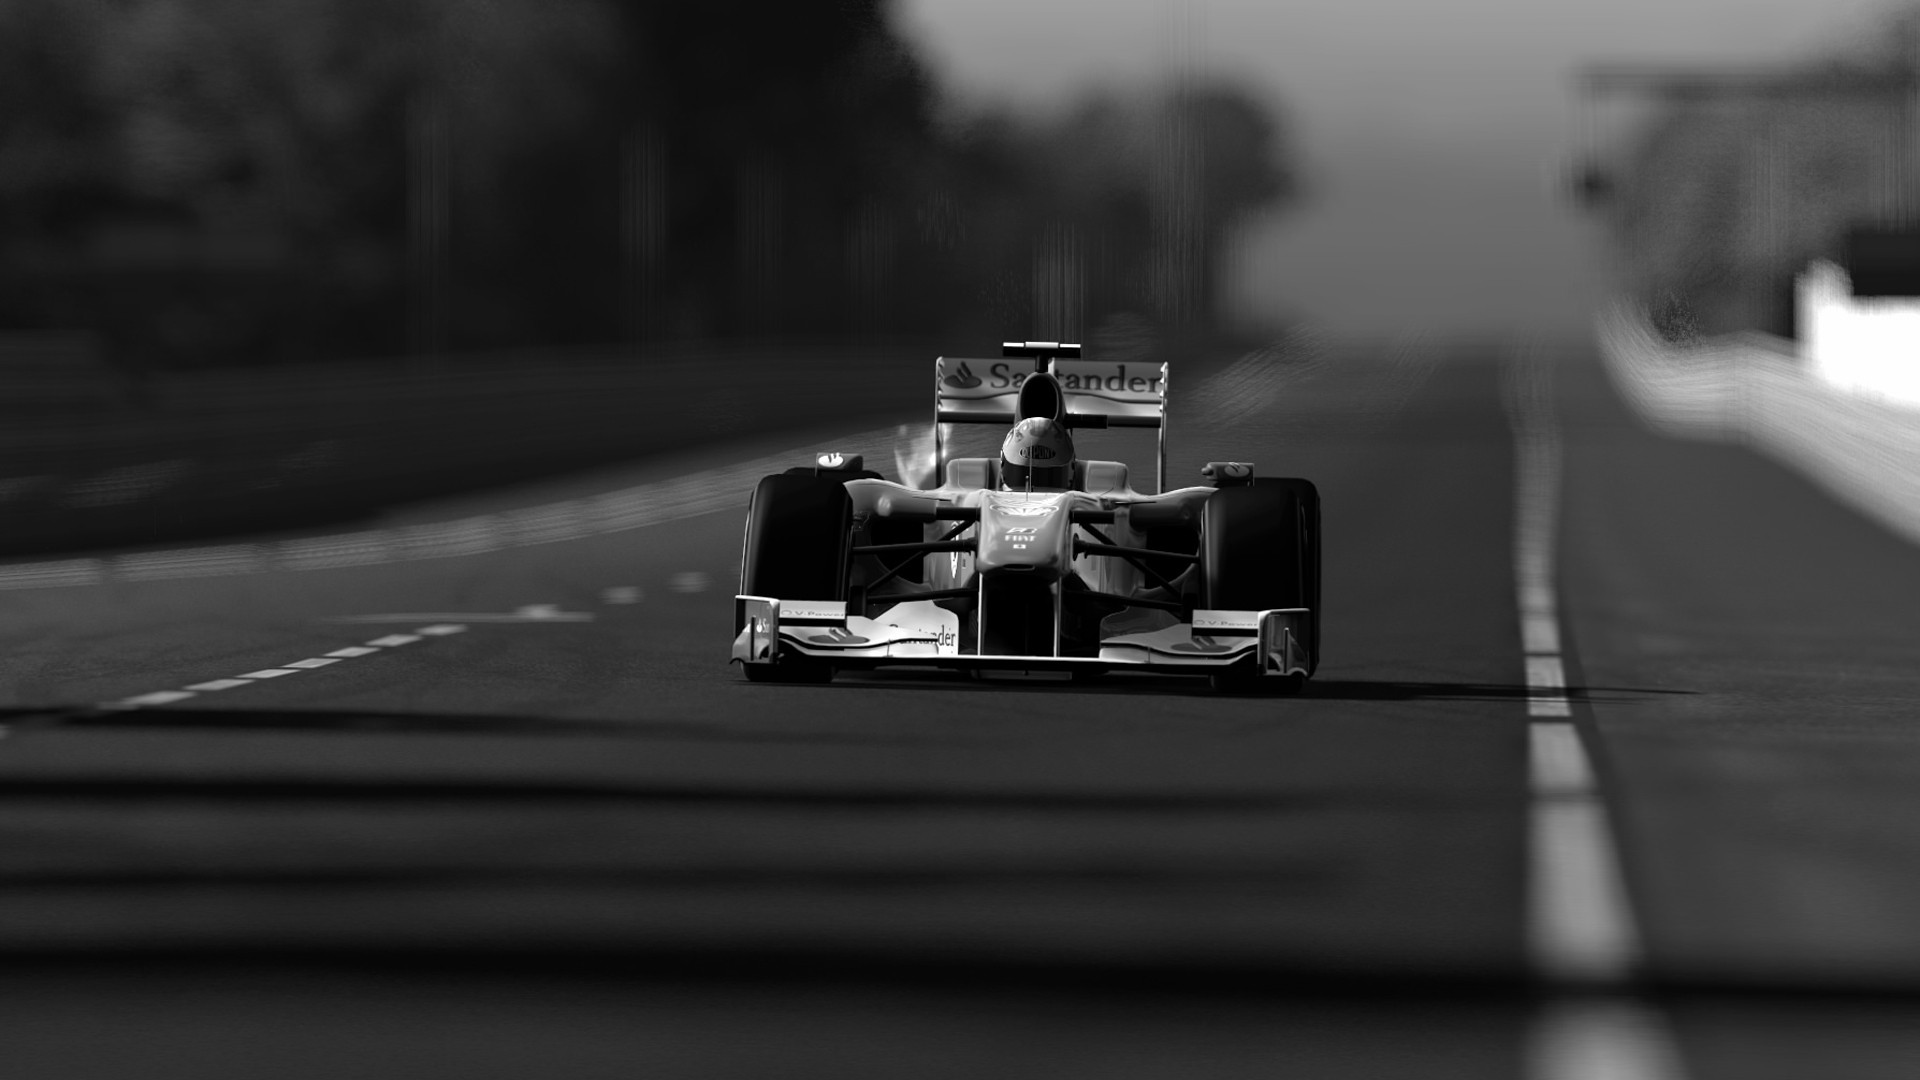 Formula 1, Car Wallpaper